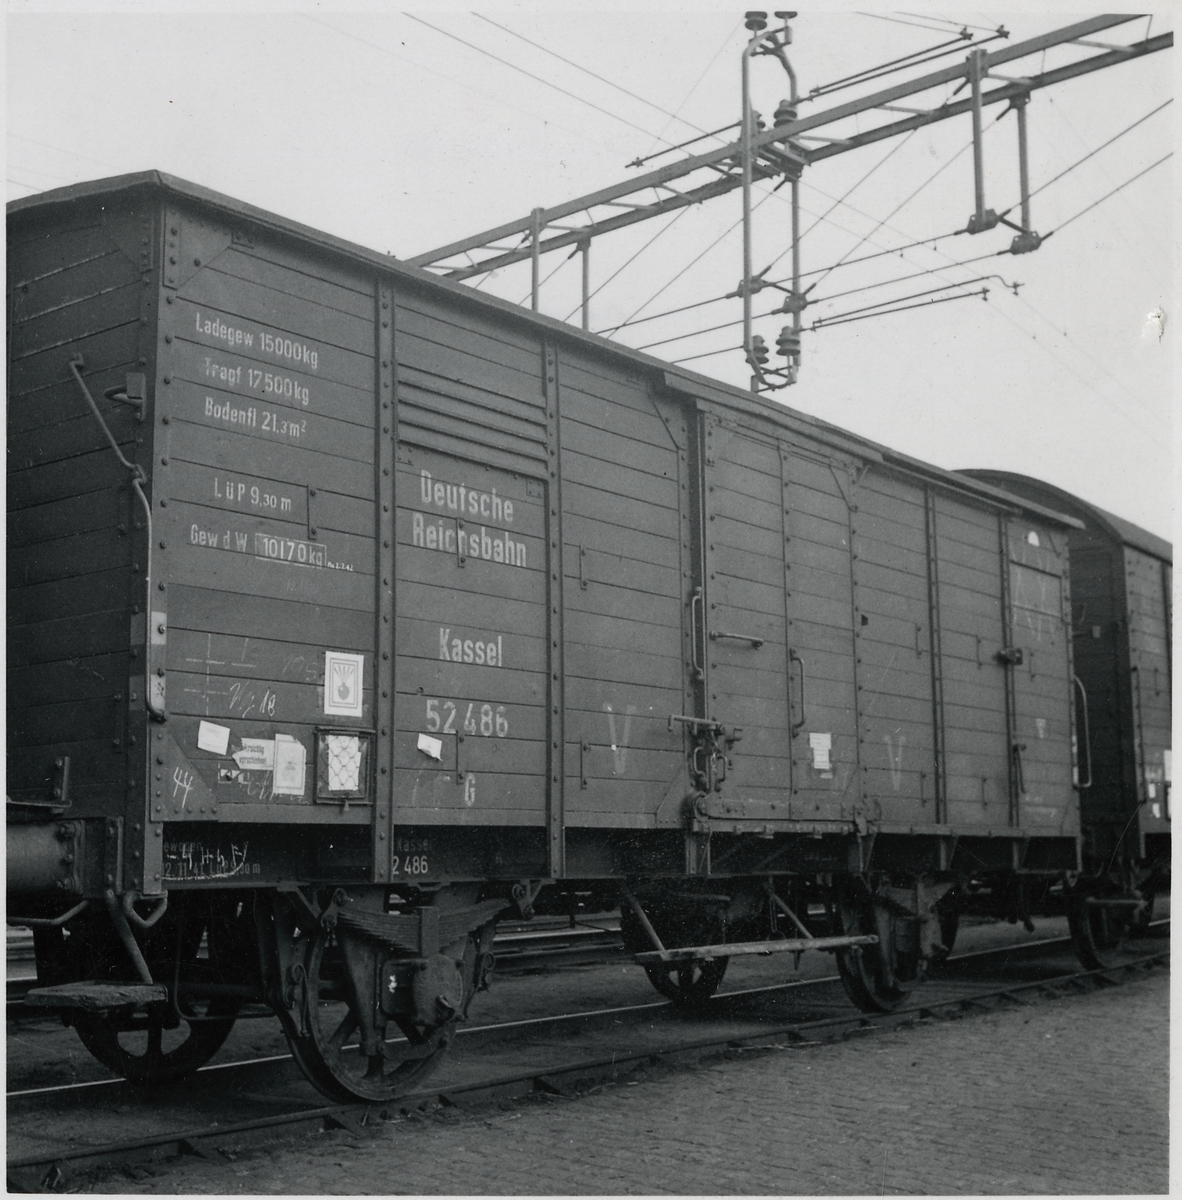 Tysk godsvagn med militär last. Deutsche Reischbahn, DR G 52486.